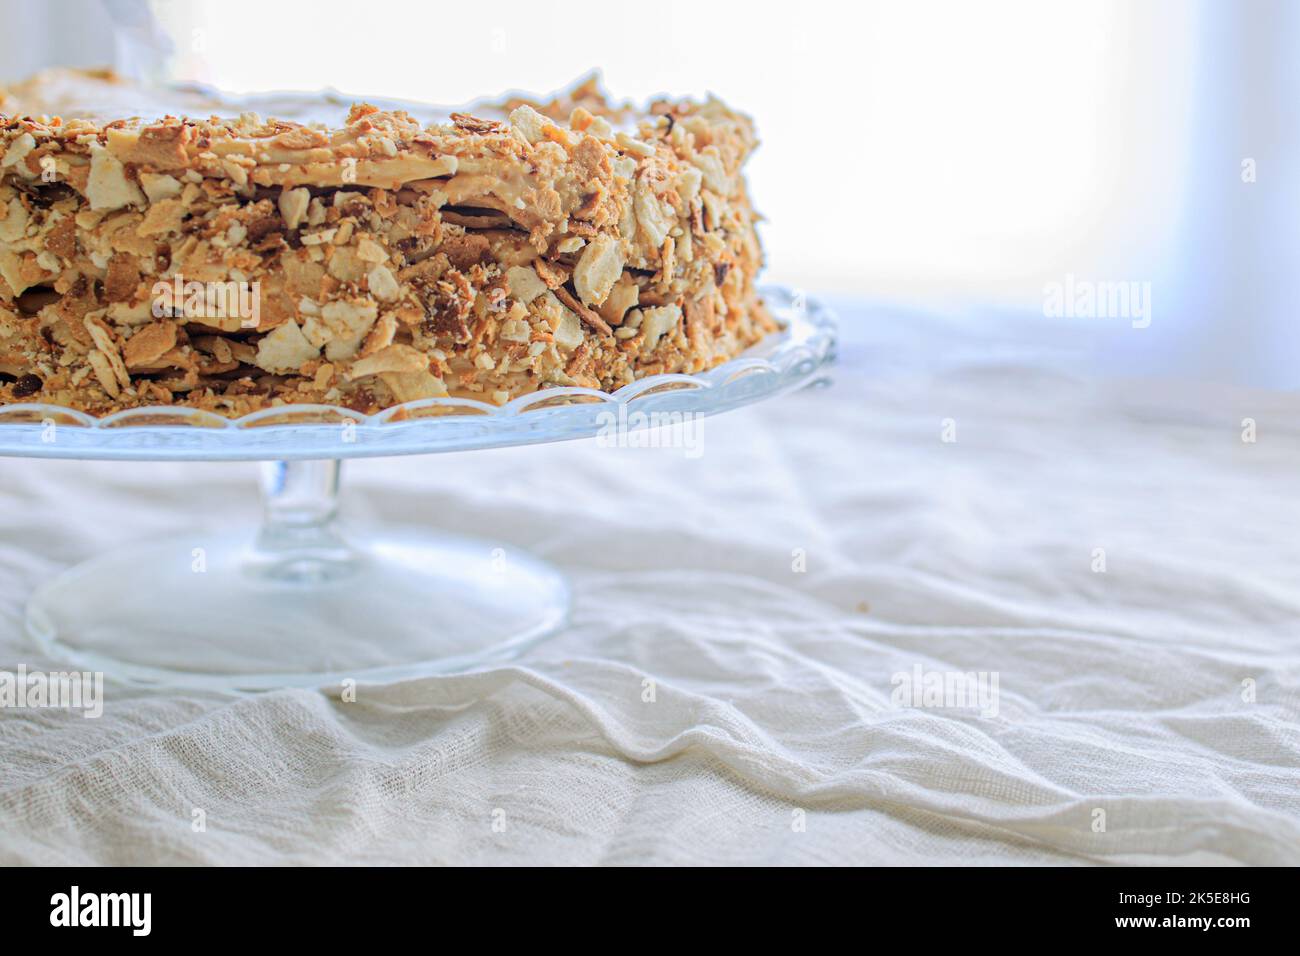 gâteau napoléon, rond entier avec crème caramel sur fond blanc. espace copie. Banque D'Images